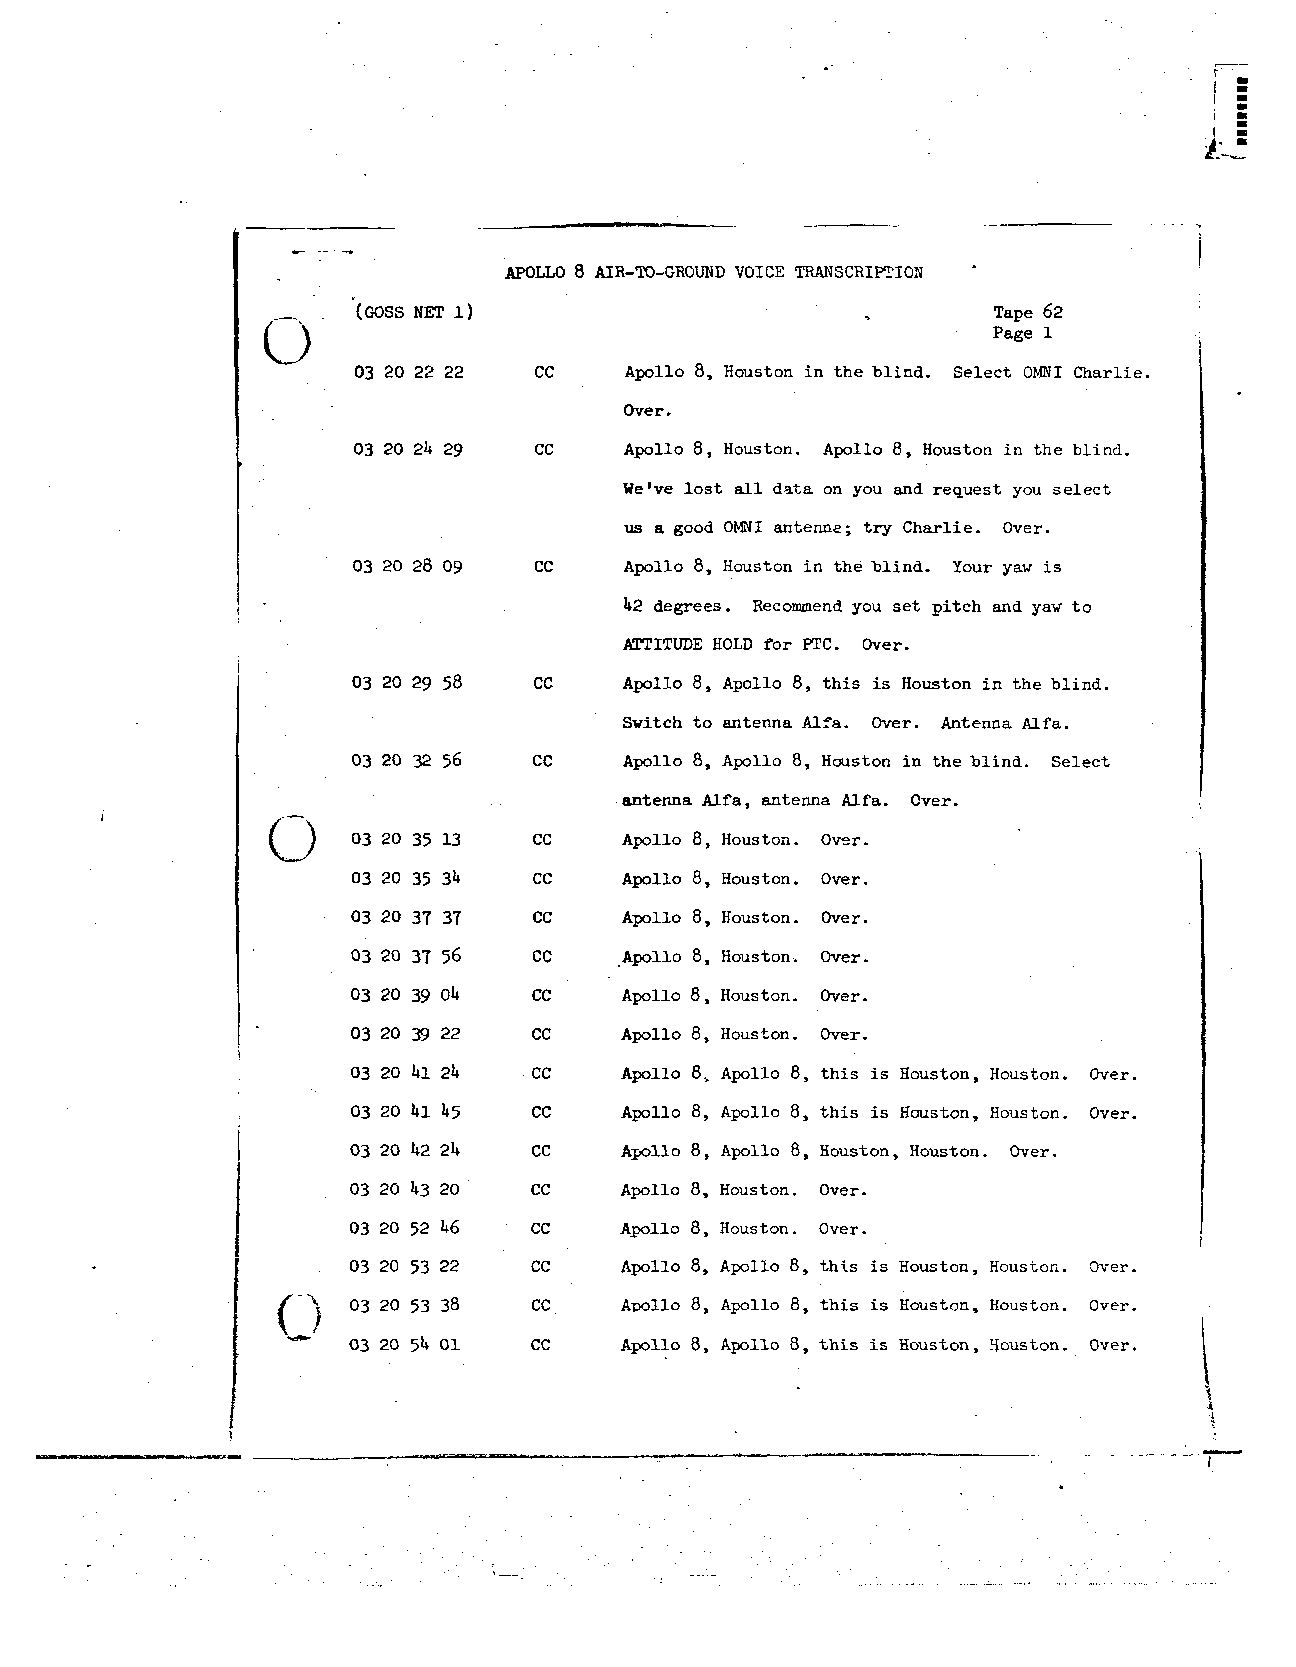 Page 491 of Apollo 8’s original transcript